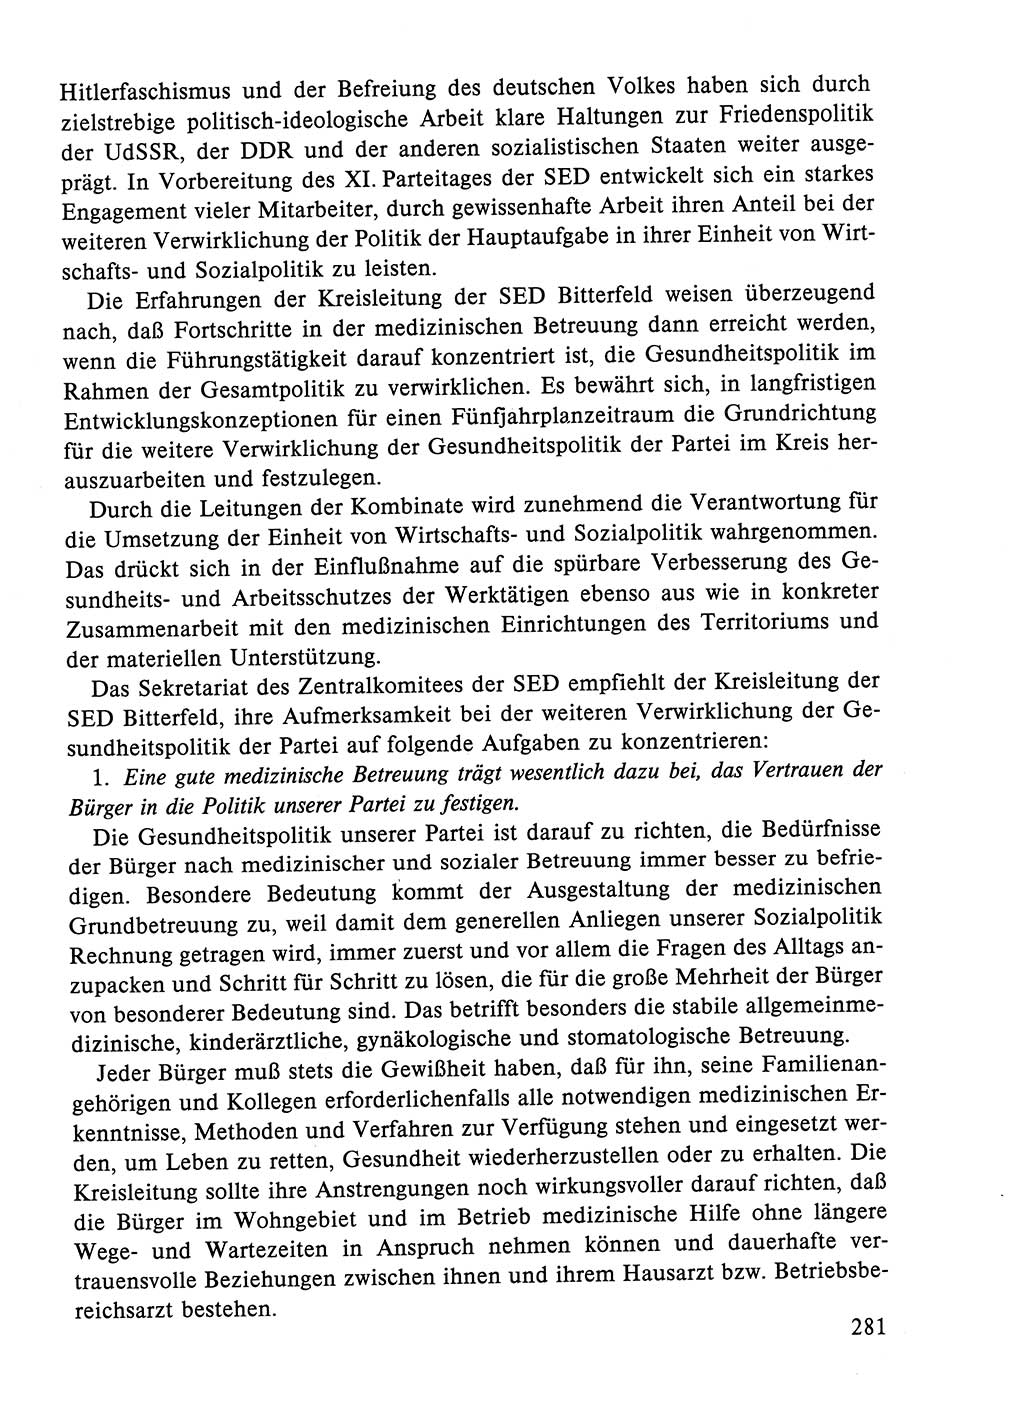 Dokumente der Sozialistischen Einheitspartei Deutschlands (SED) [Deutsche Demokratische Republik (DDR)] 1984-1985, Seite 146 (Dok. SED DDR 1984-1985, S. 146)